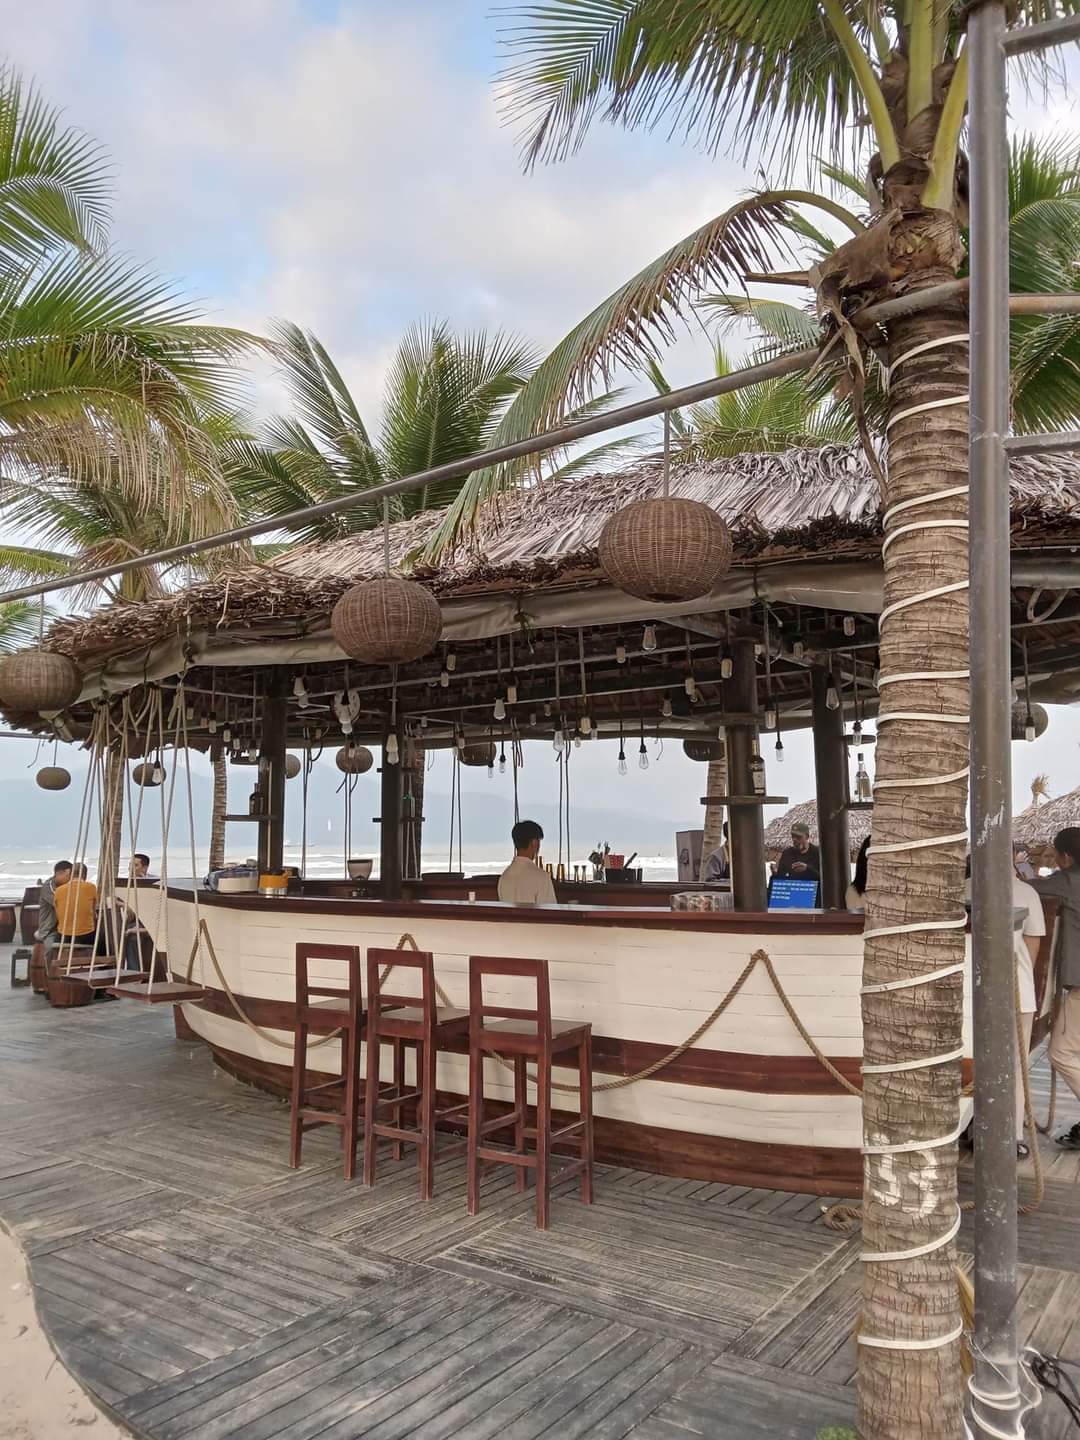 Tropical outdoor bar along the beach in Da Nang, Vietnam